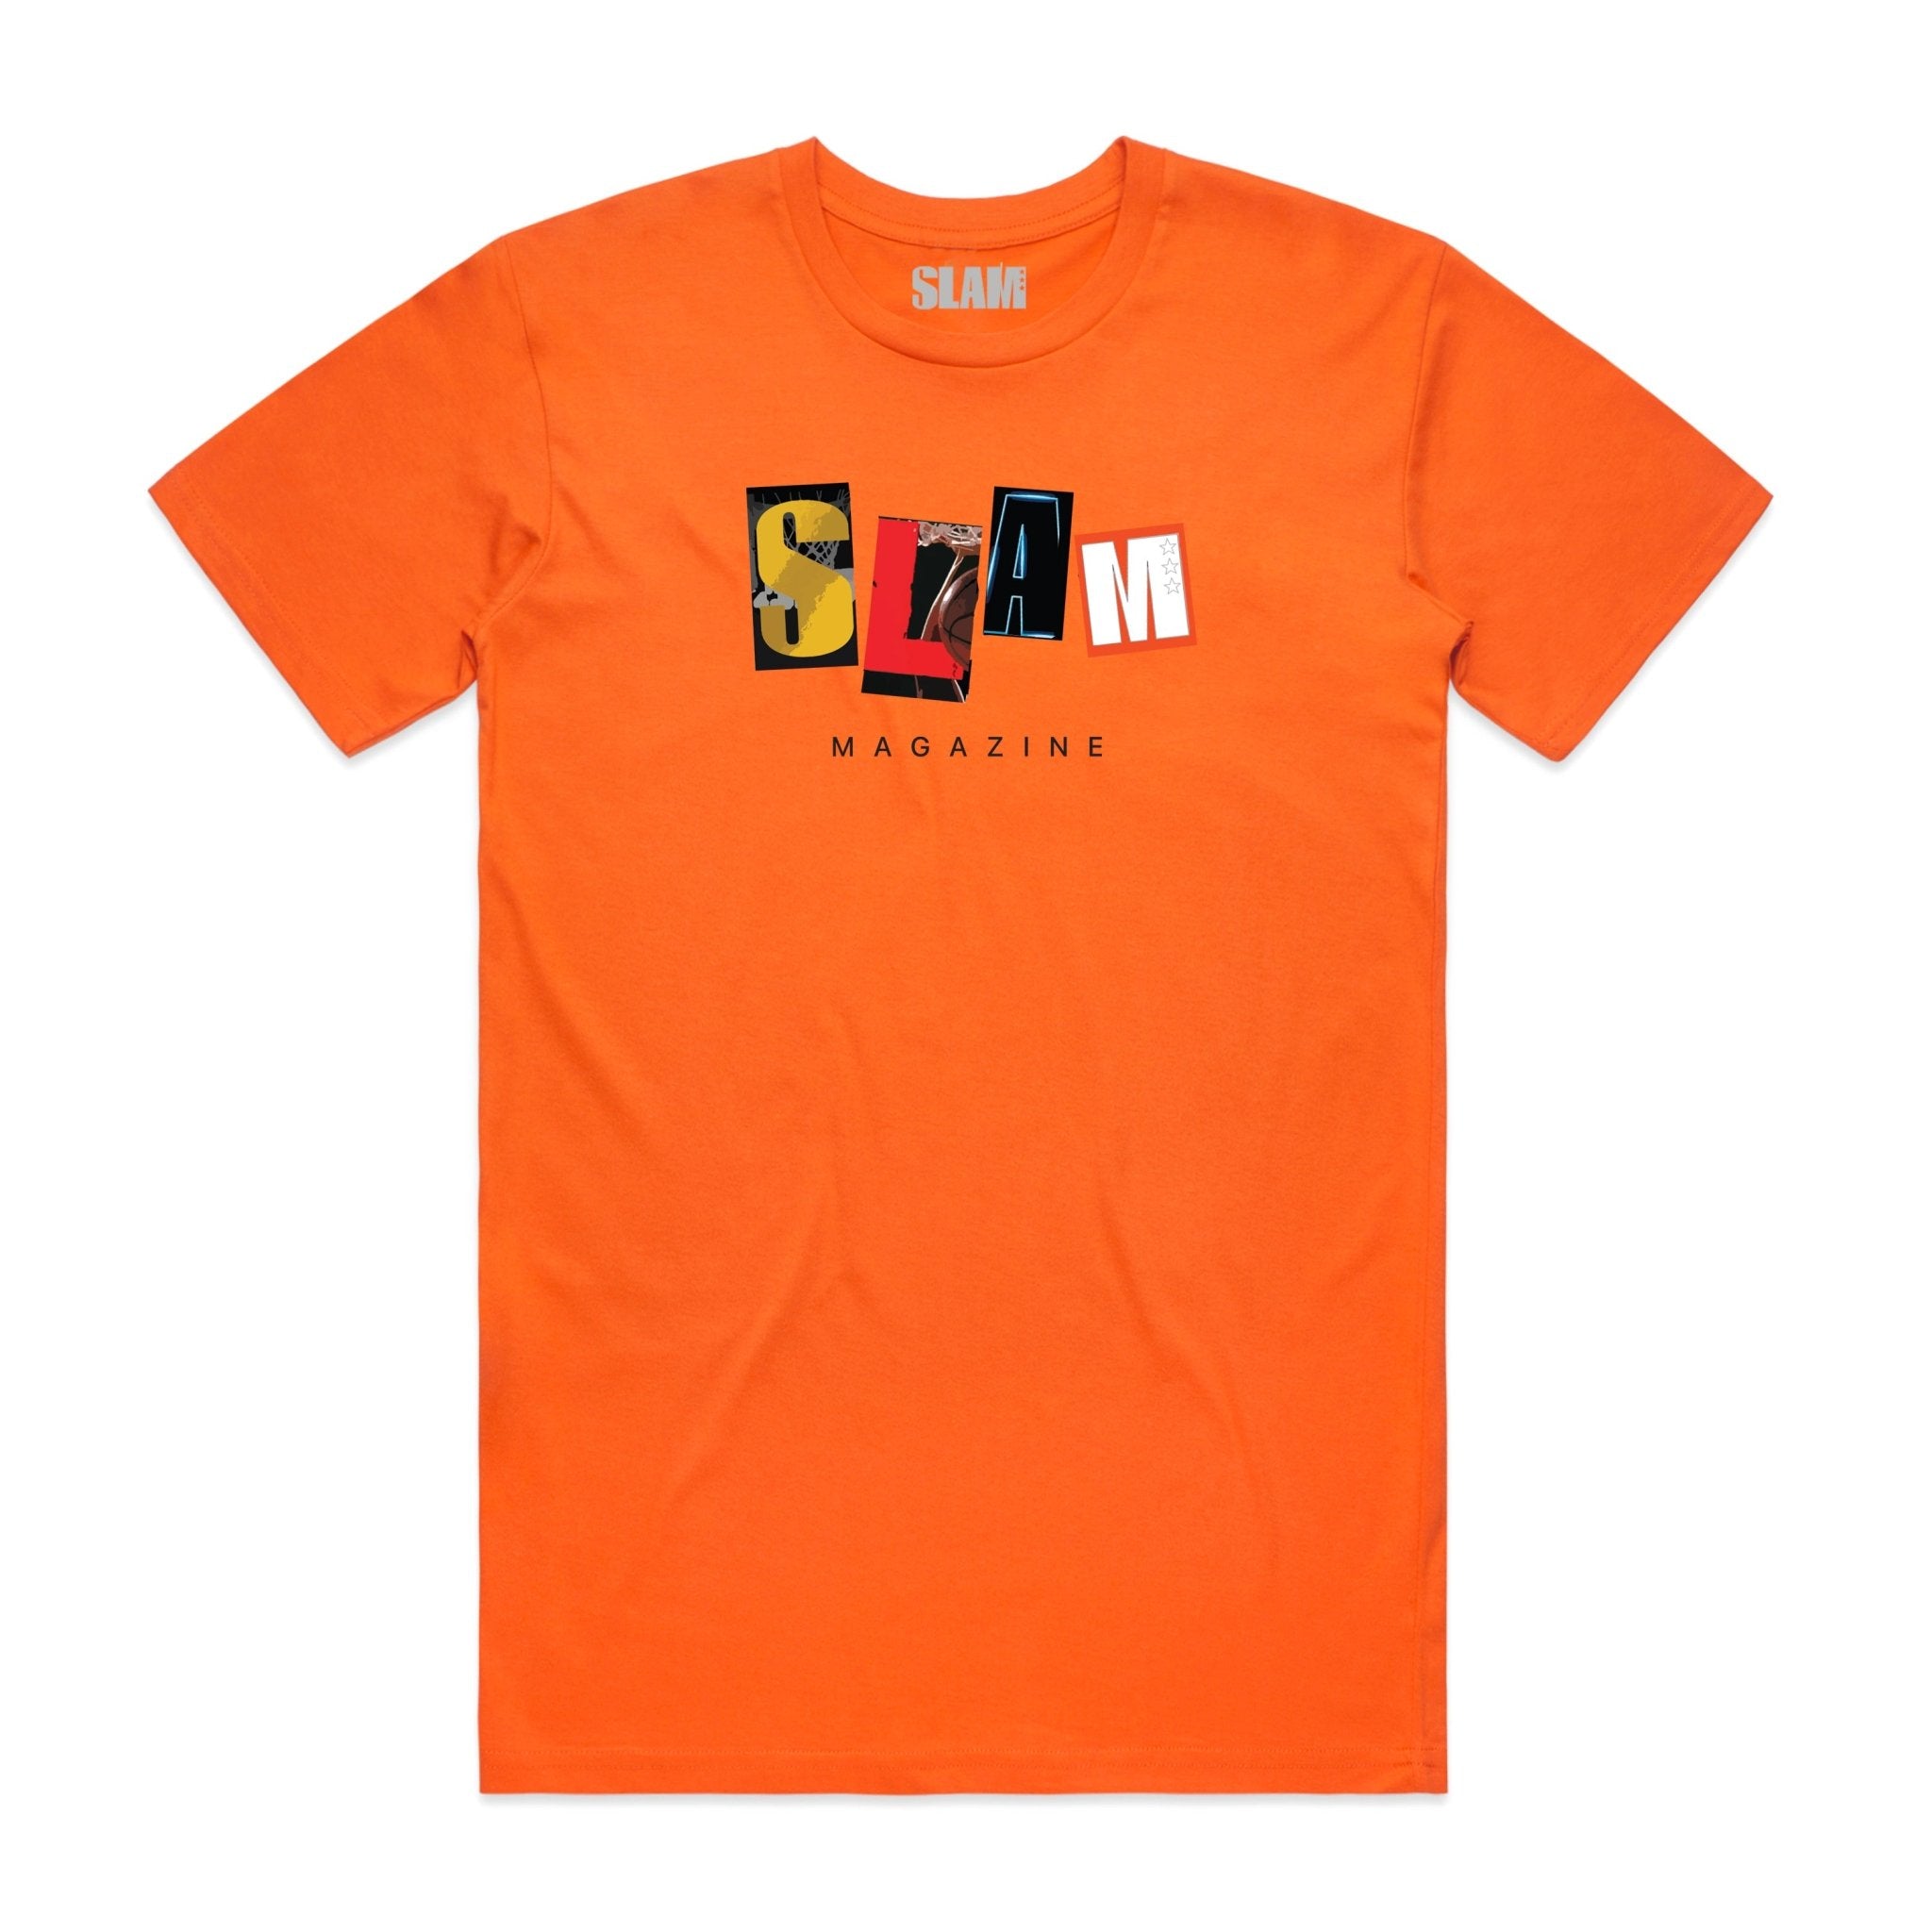 Slam LIKE - Allen Iverson (T-Shirt)-DaPrintFactory